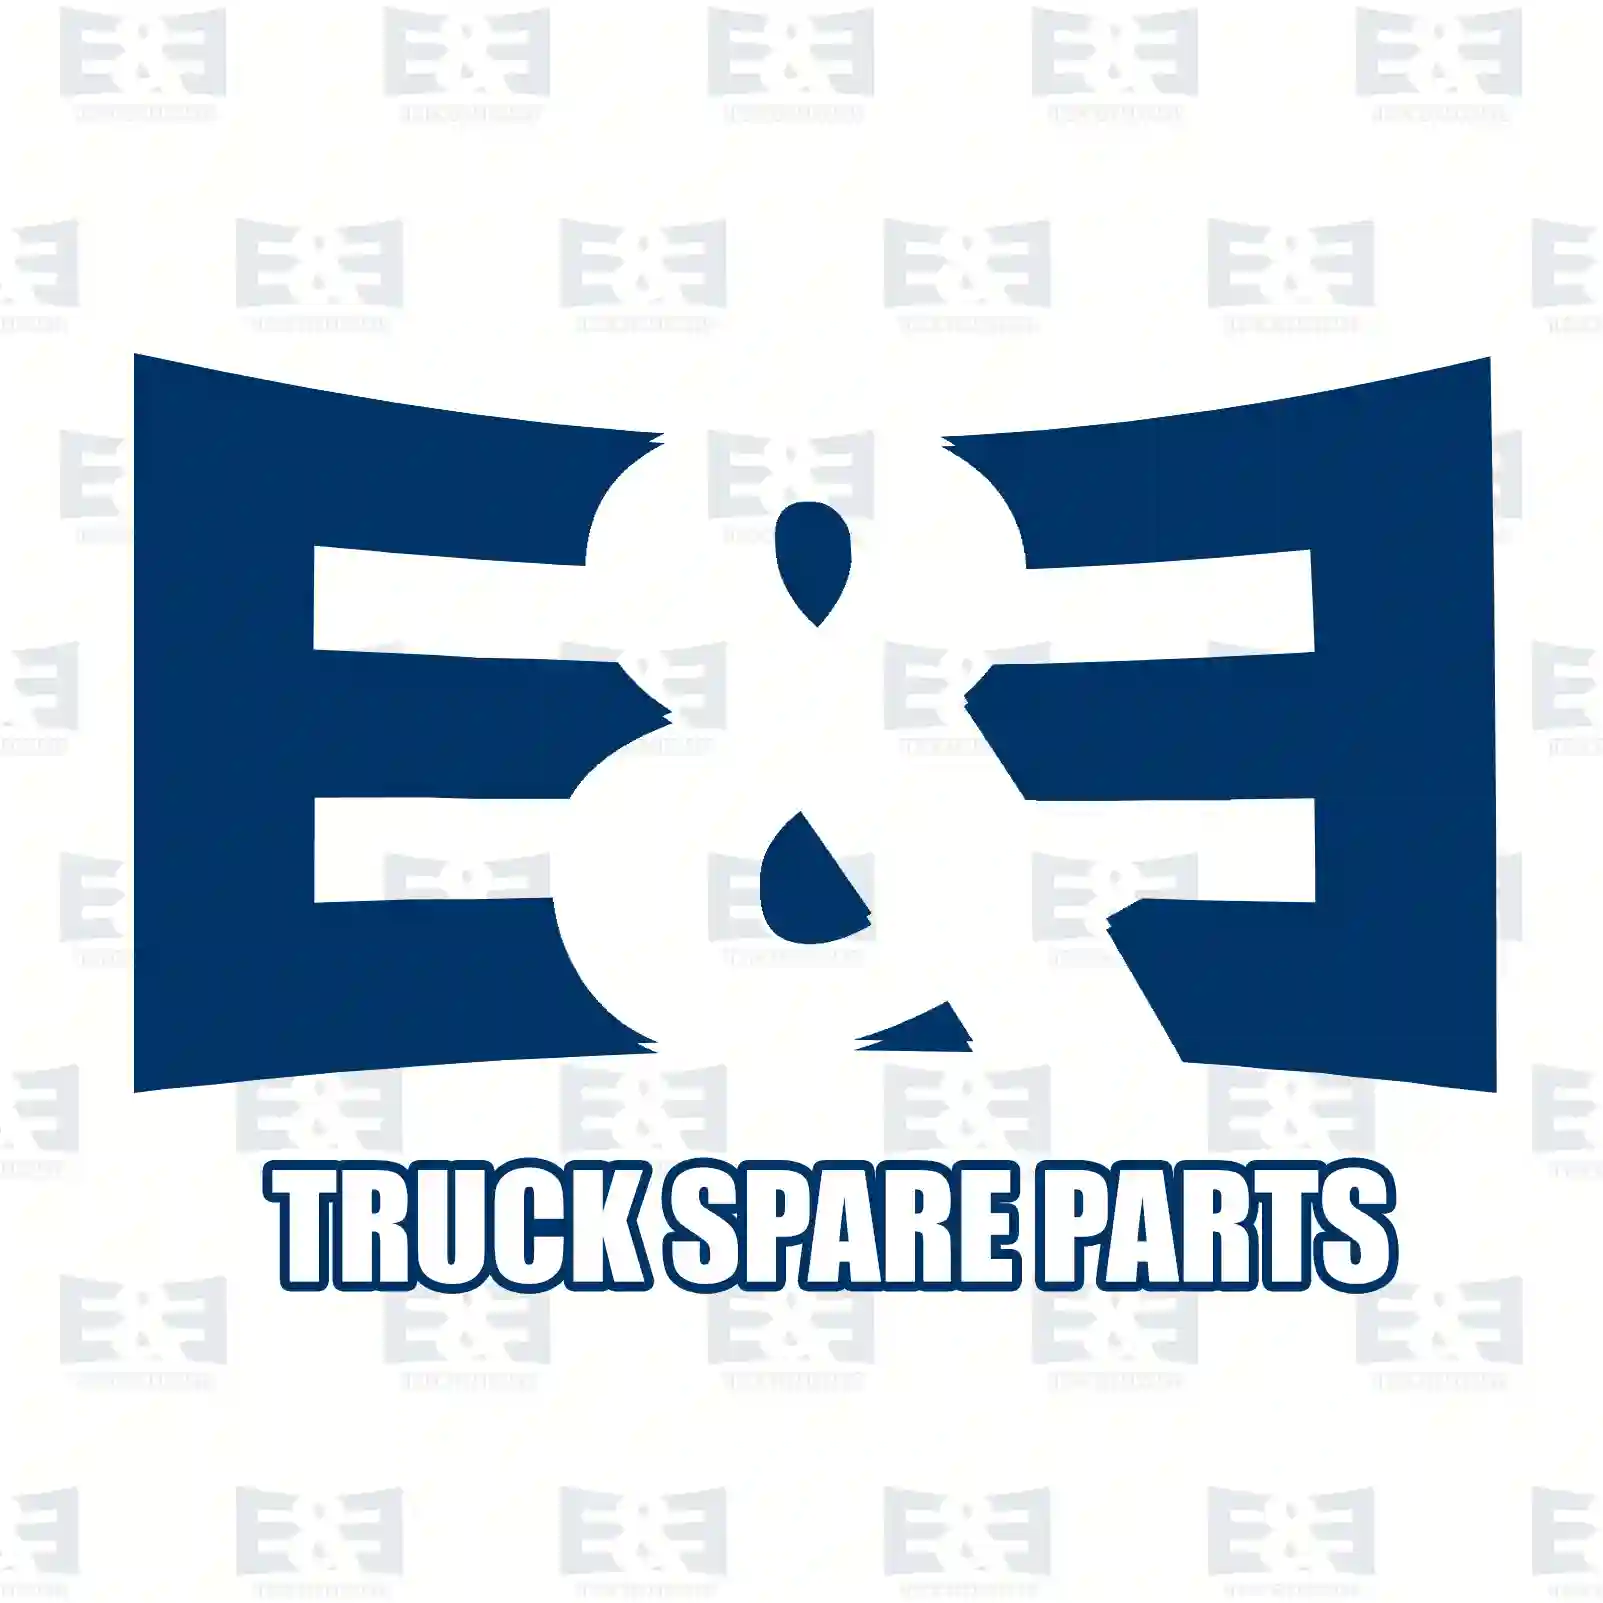 General overhaul kit, 2E2206855, 85103633S1 ||  2E2206855 E&E Truck Spare Parts | Truck Spare Parts, Auotomotive Spare Parts General overhaul kit, 2E2206855, 85103633S1 ||  2E2206855 E&E Truck Spare Parts | Truck Spare Parts, Auotomotive Spare Parts